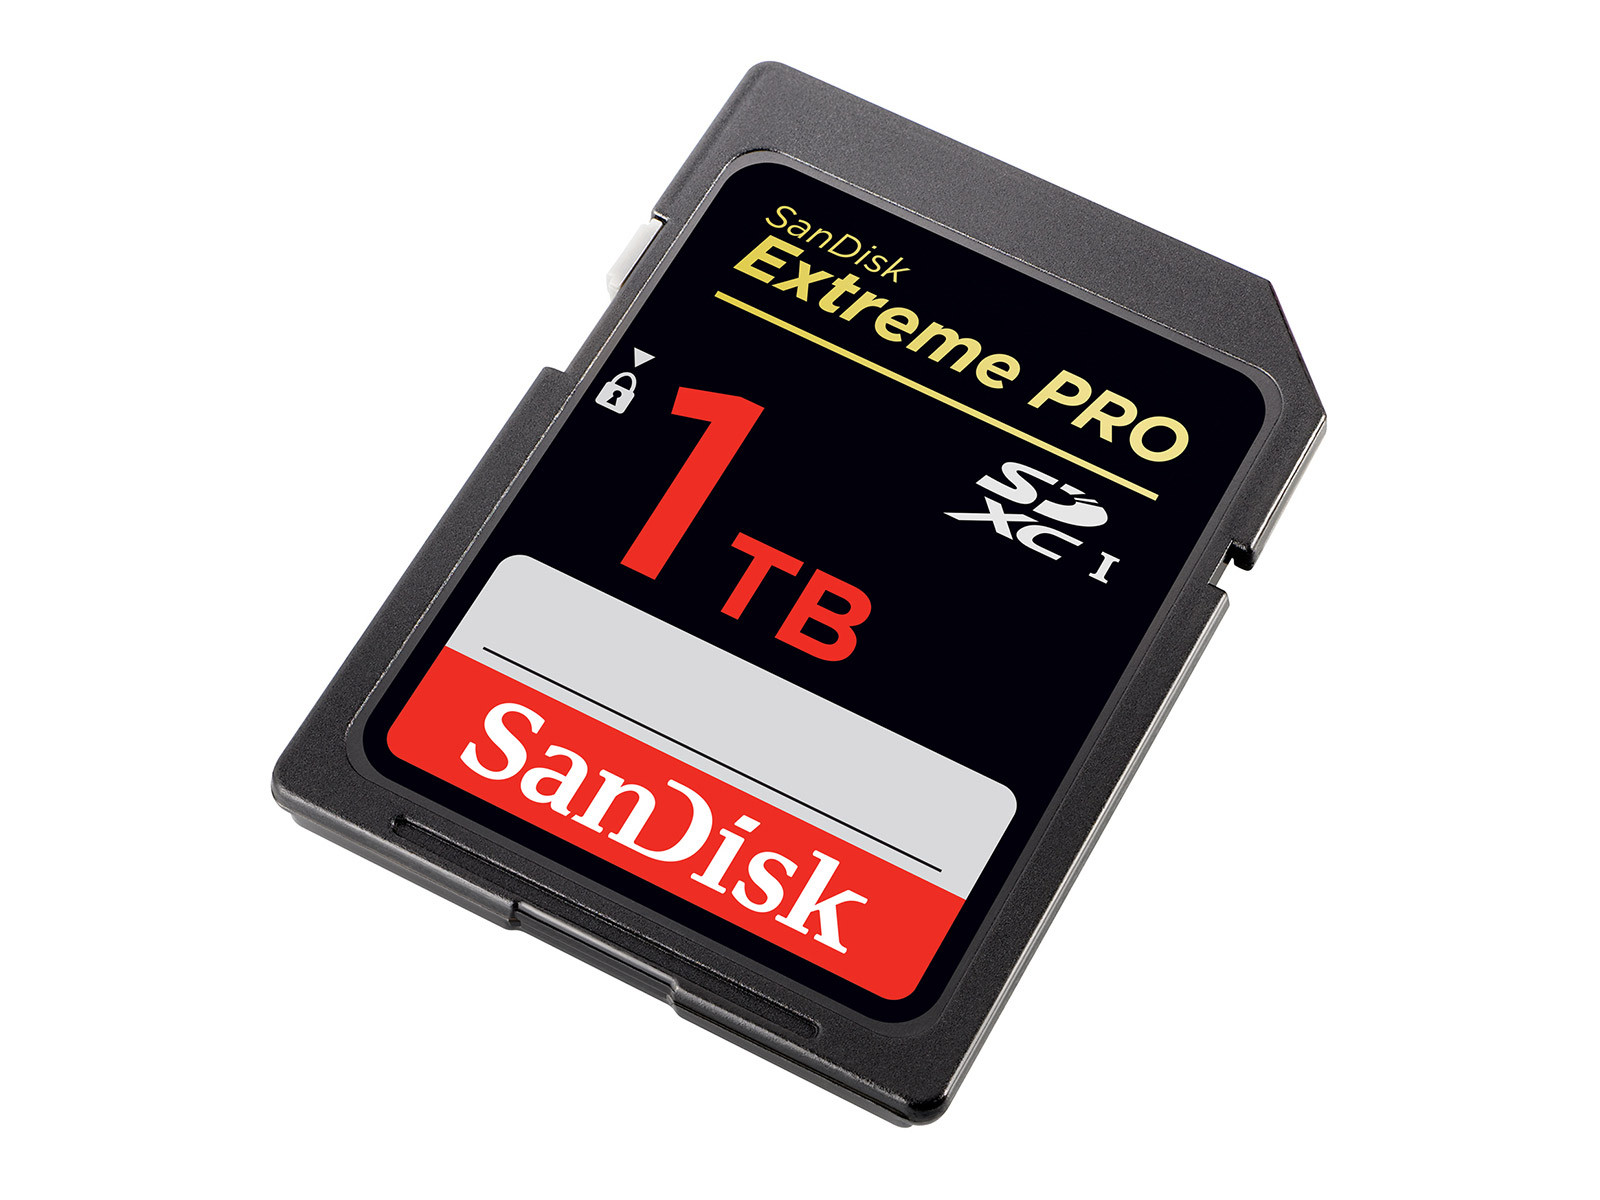 Immagine pubblicata in relazione al seguente contenuto: Western Digital sviluppa una SDXC SanDisk Extreme Pro con capacit di 1TB | Nome immagine: news24981_Western-Digital-SanDisk-Extreme-Pro-1TB_1.jpg